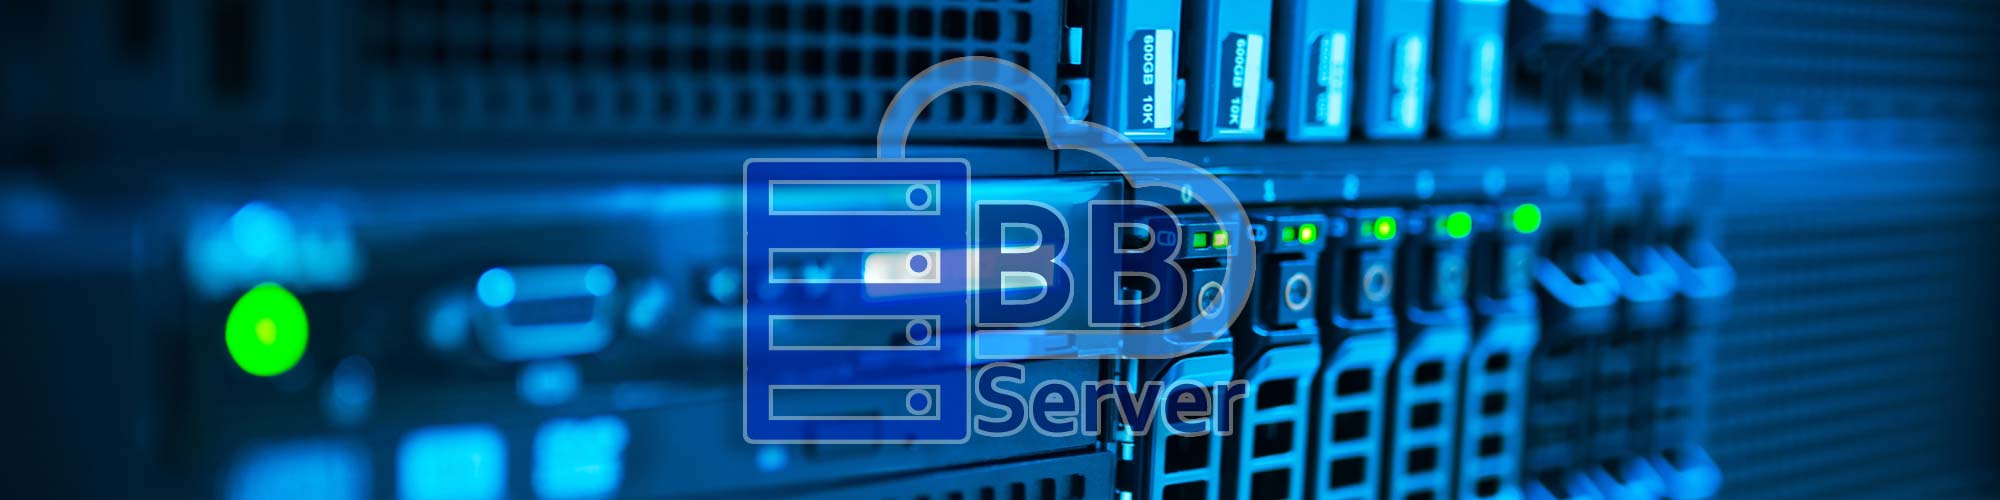 B.B. Server